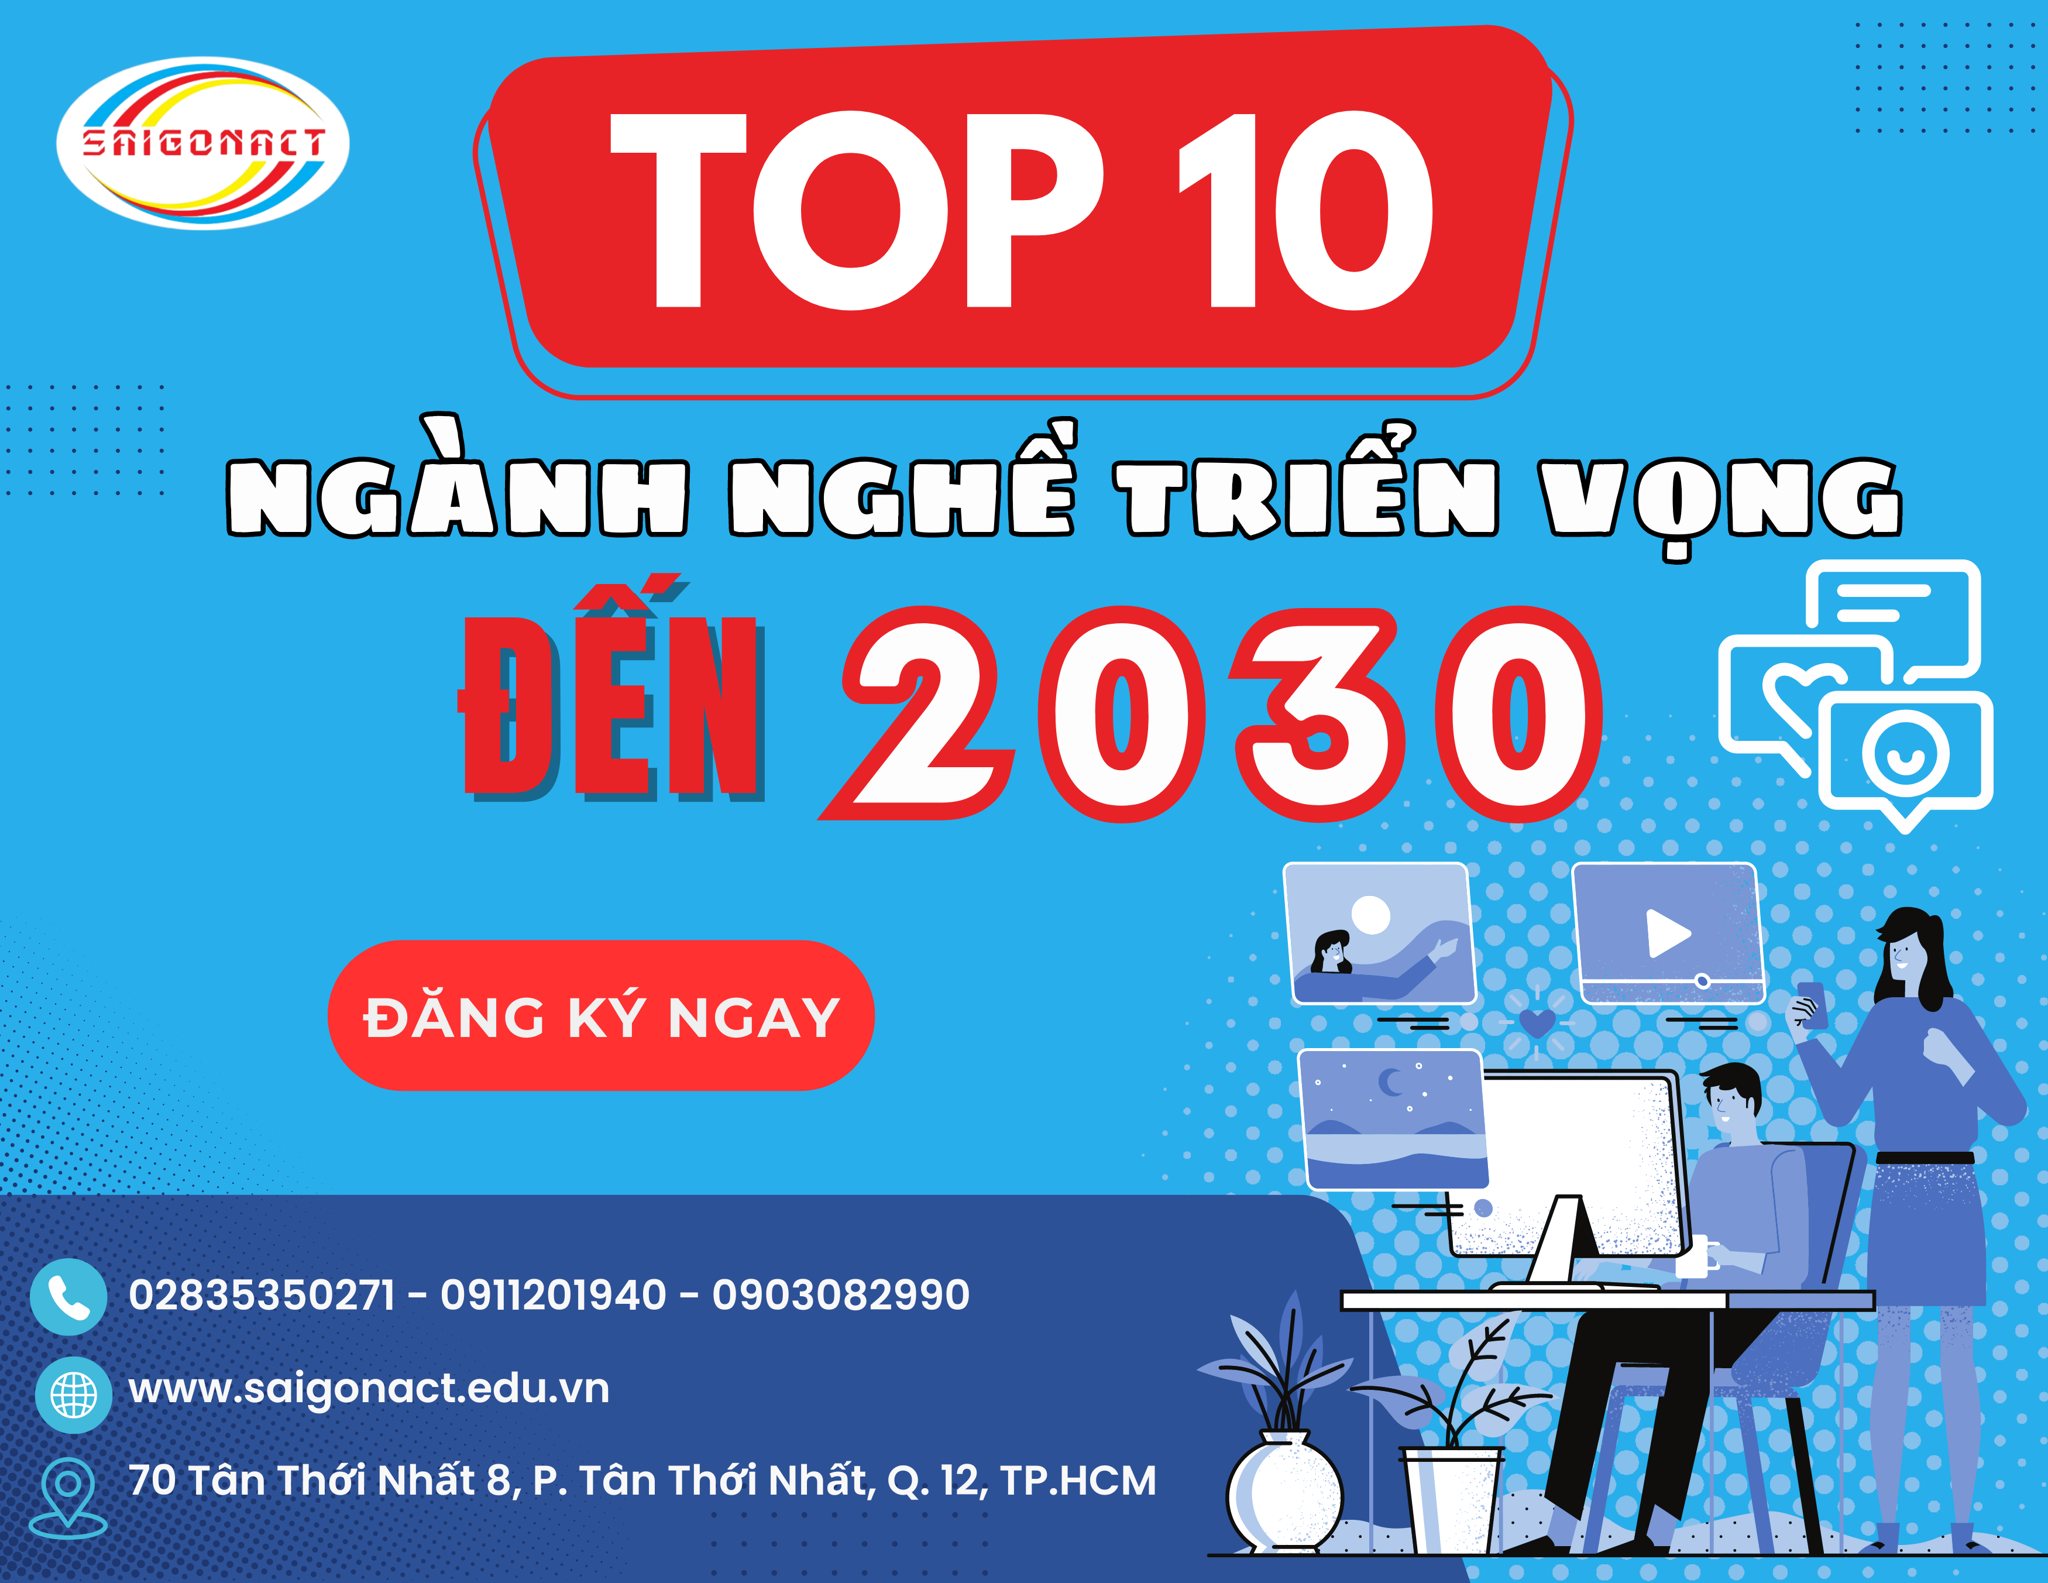 TOP 10 NGÀNH NGHỀ CÓ TRIỂN VỌNG TƯƠNG LAI ĐẾN NĂM 2023